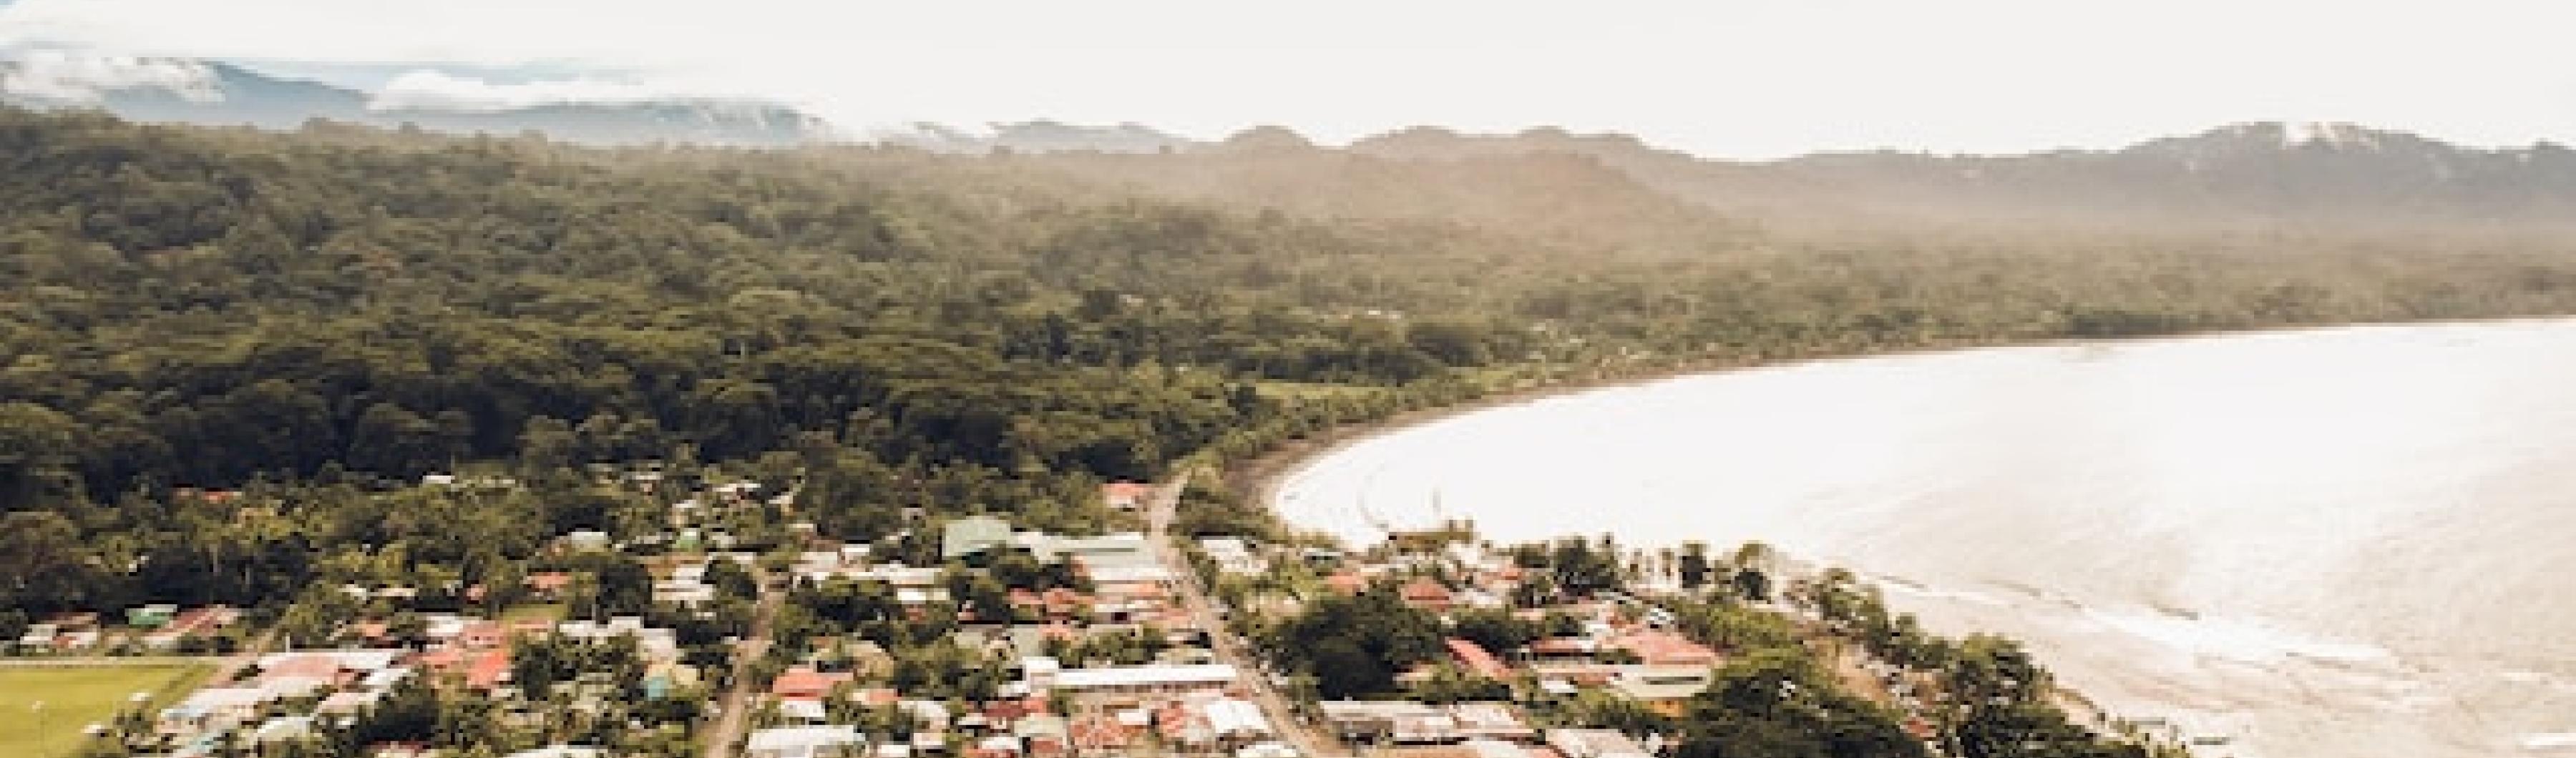 vue d'une ville côtière au costa rica